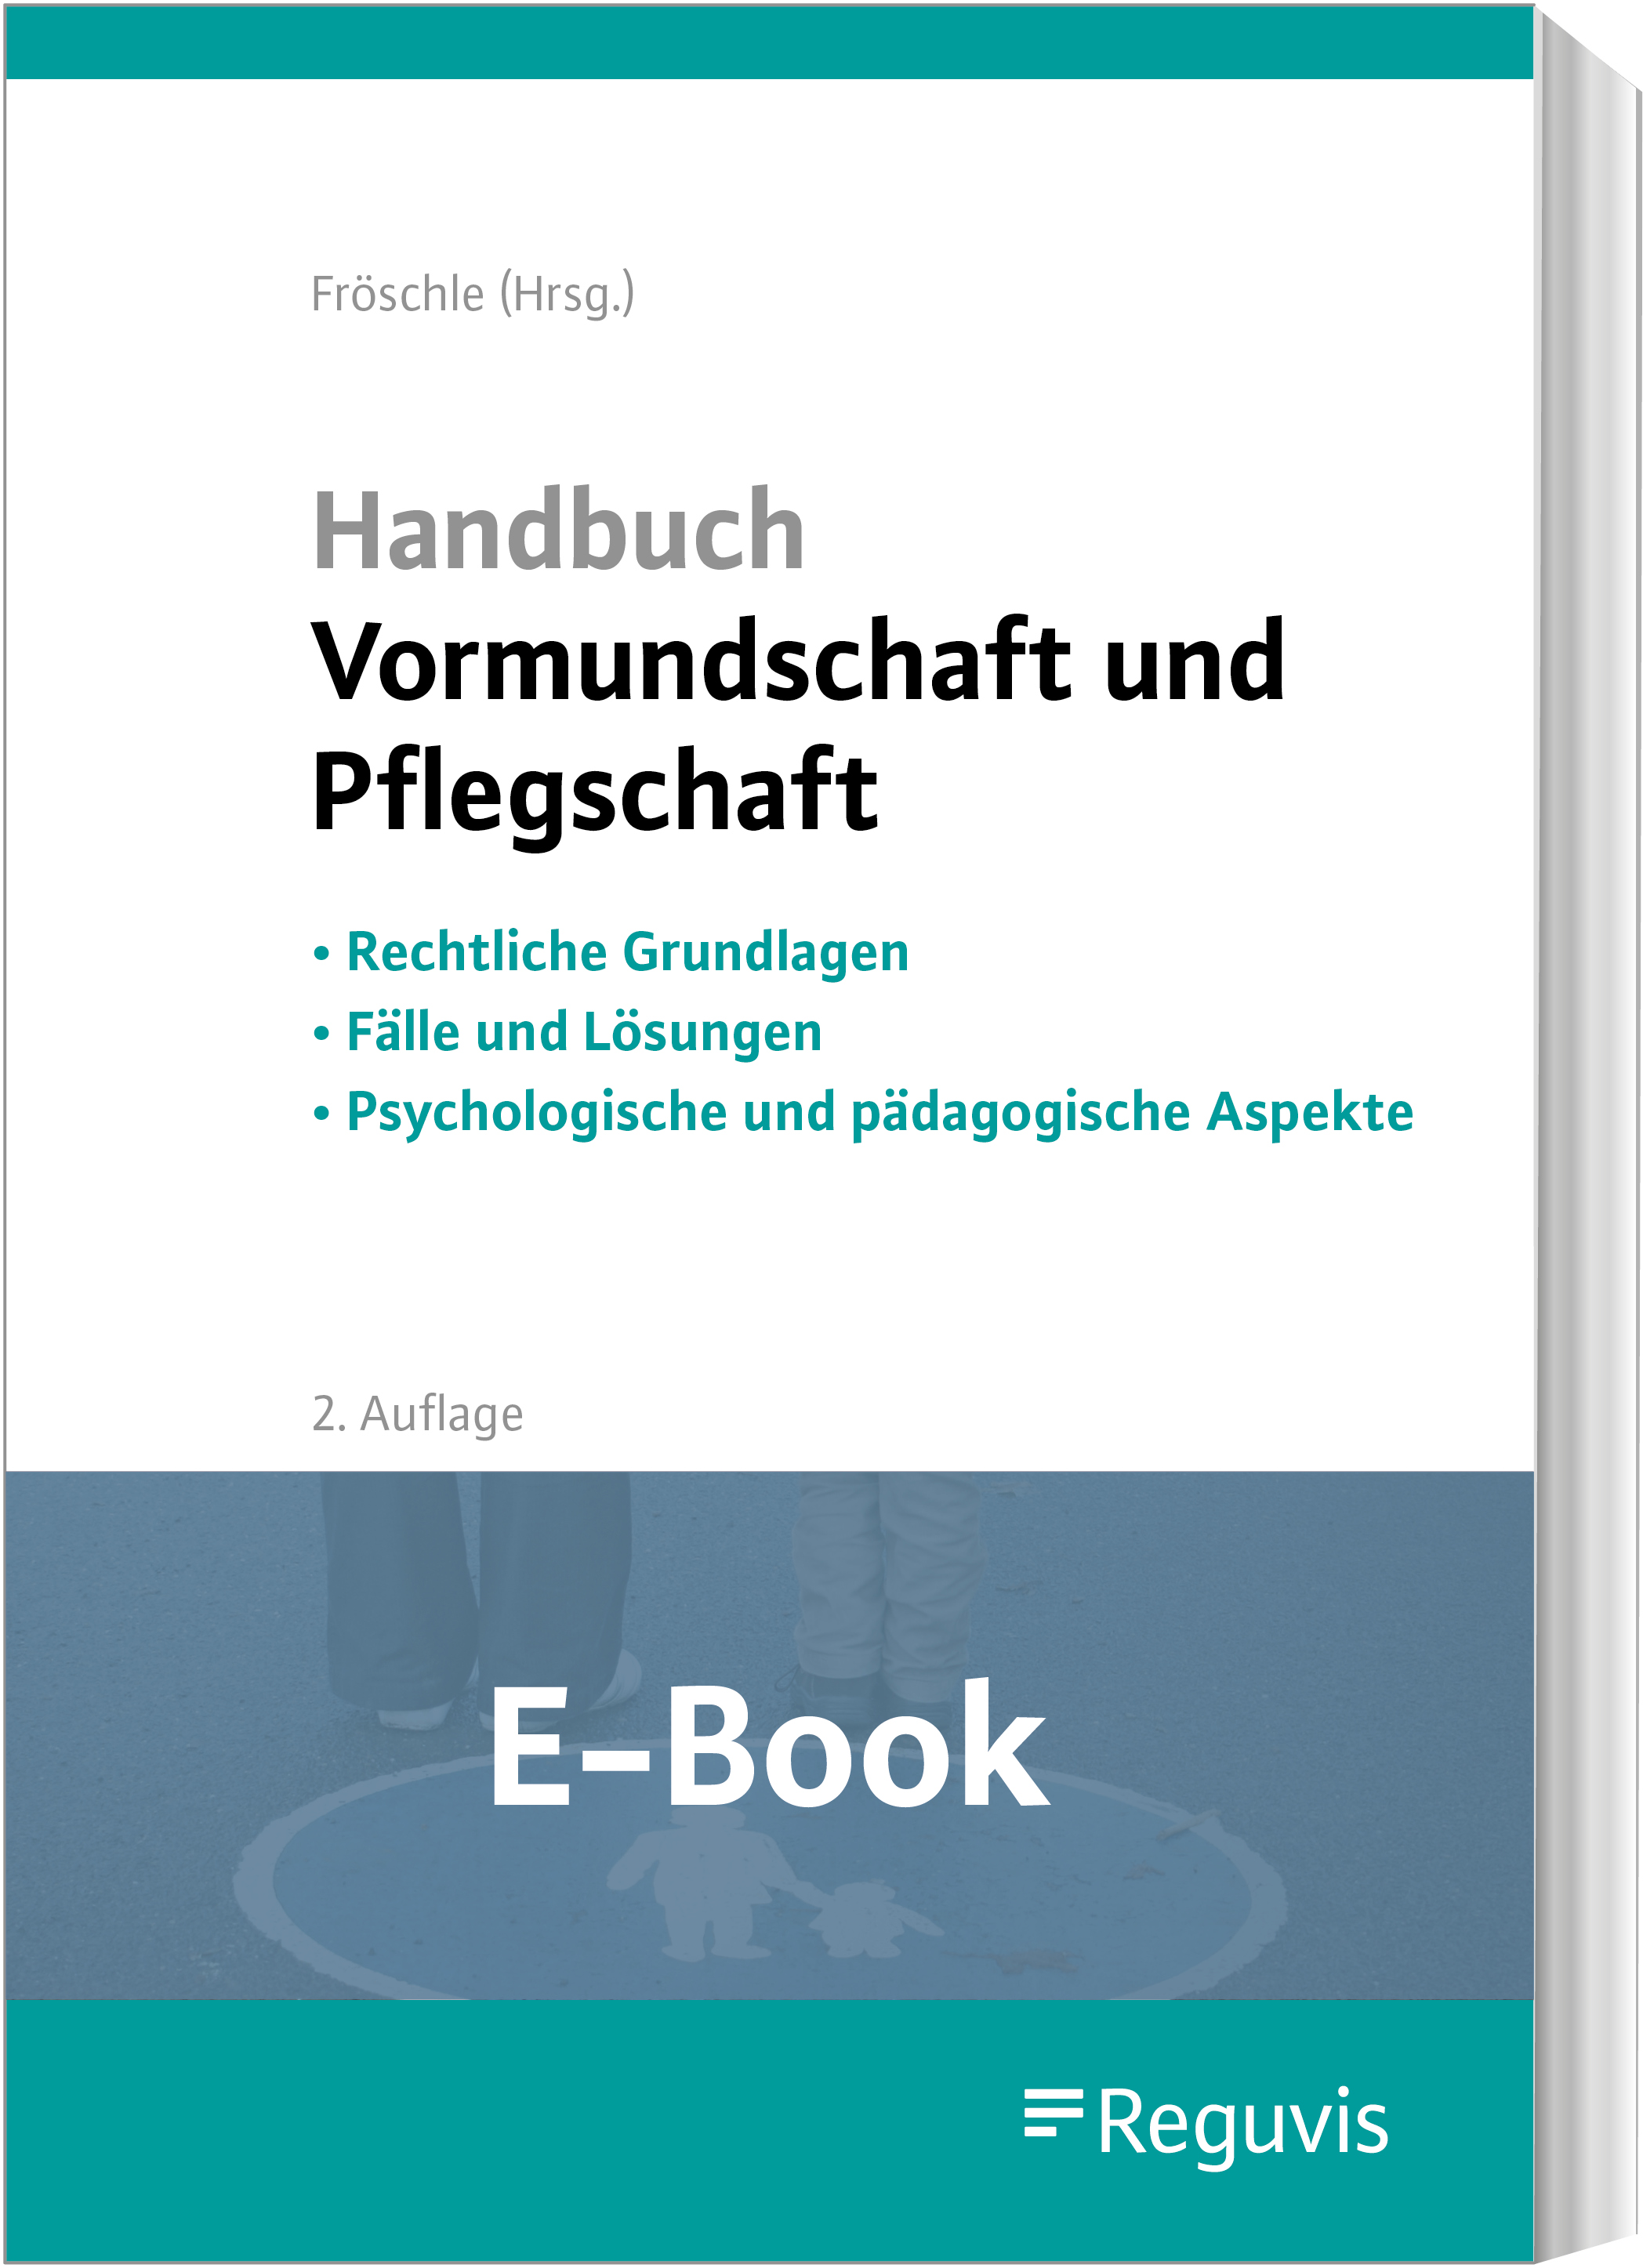 Handbuch Vormundschaft und Pflegschaft (2. Auflage) (E-Book)